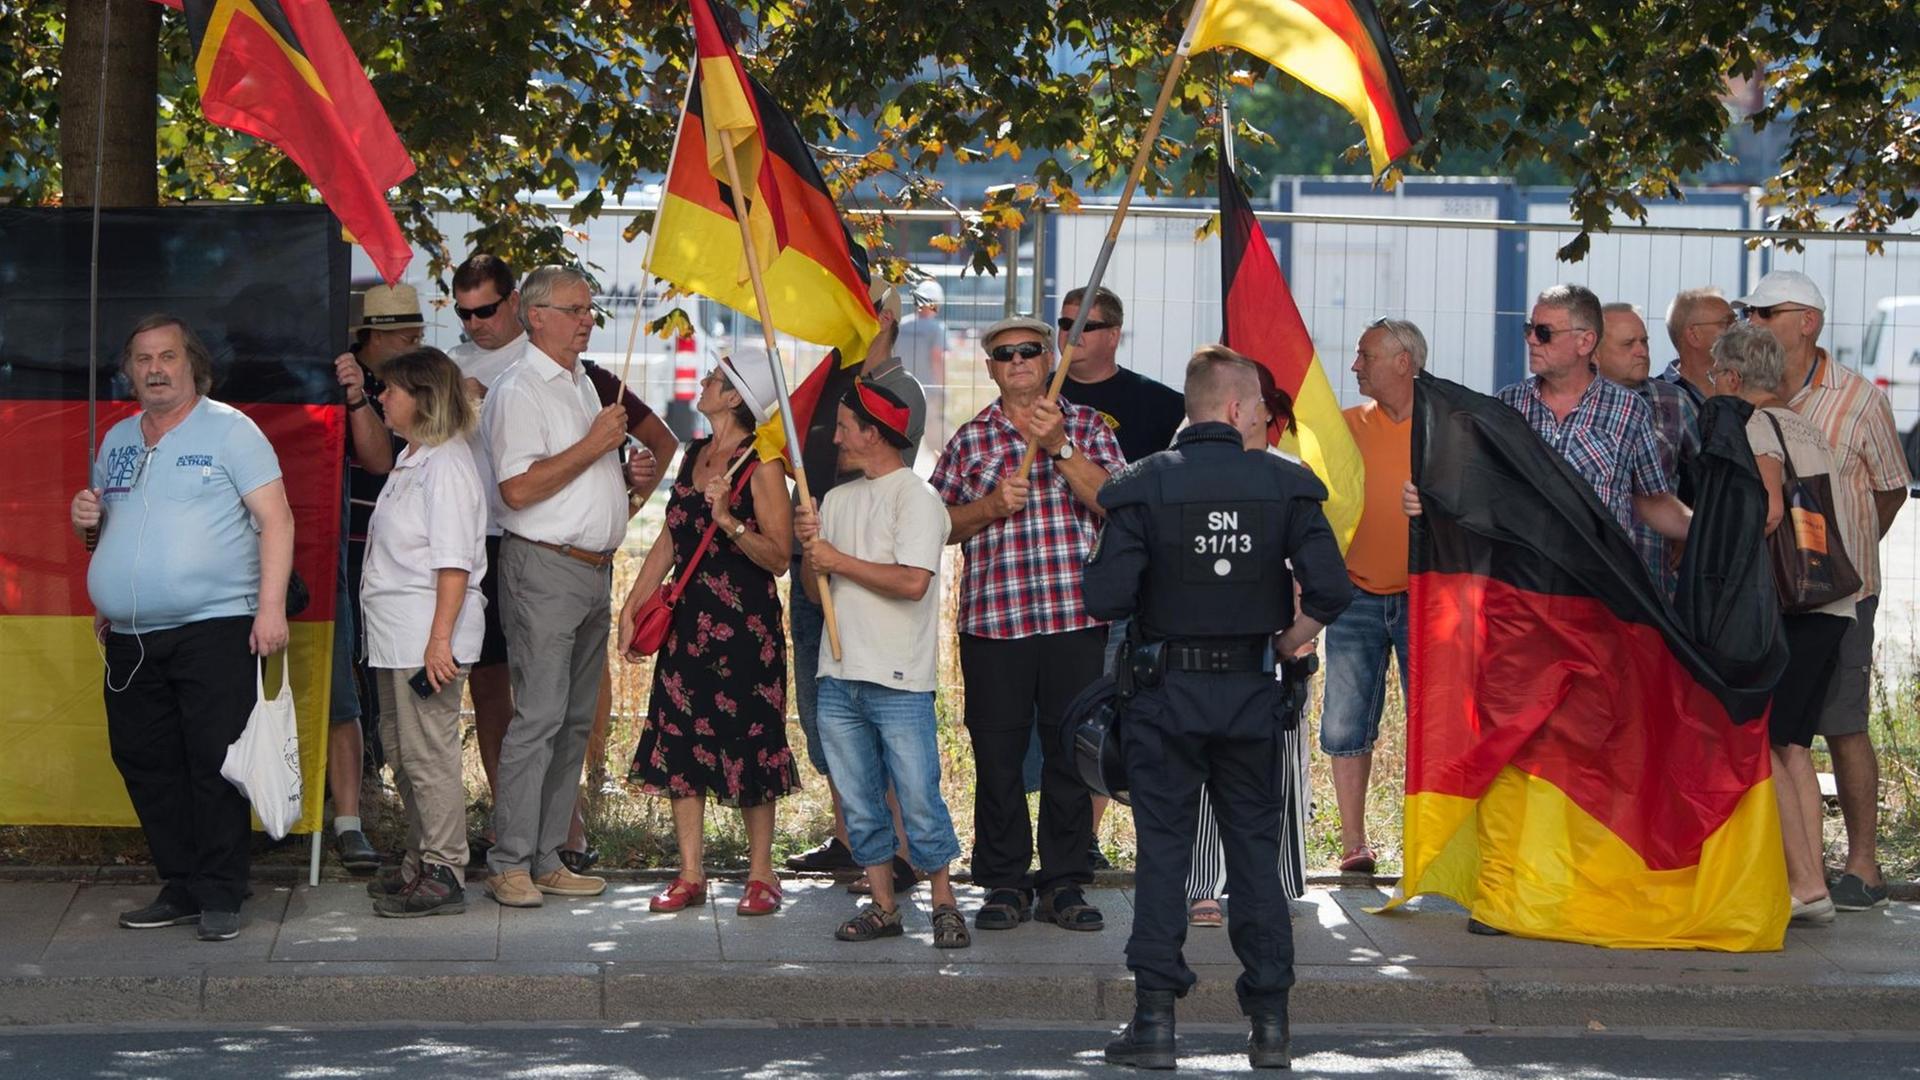 Menschen stehen auf einem Bürger-Steig, mehrere von ihnen tragen Deutschland-Fahnen. Vor ihnen steht ein Polizist.